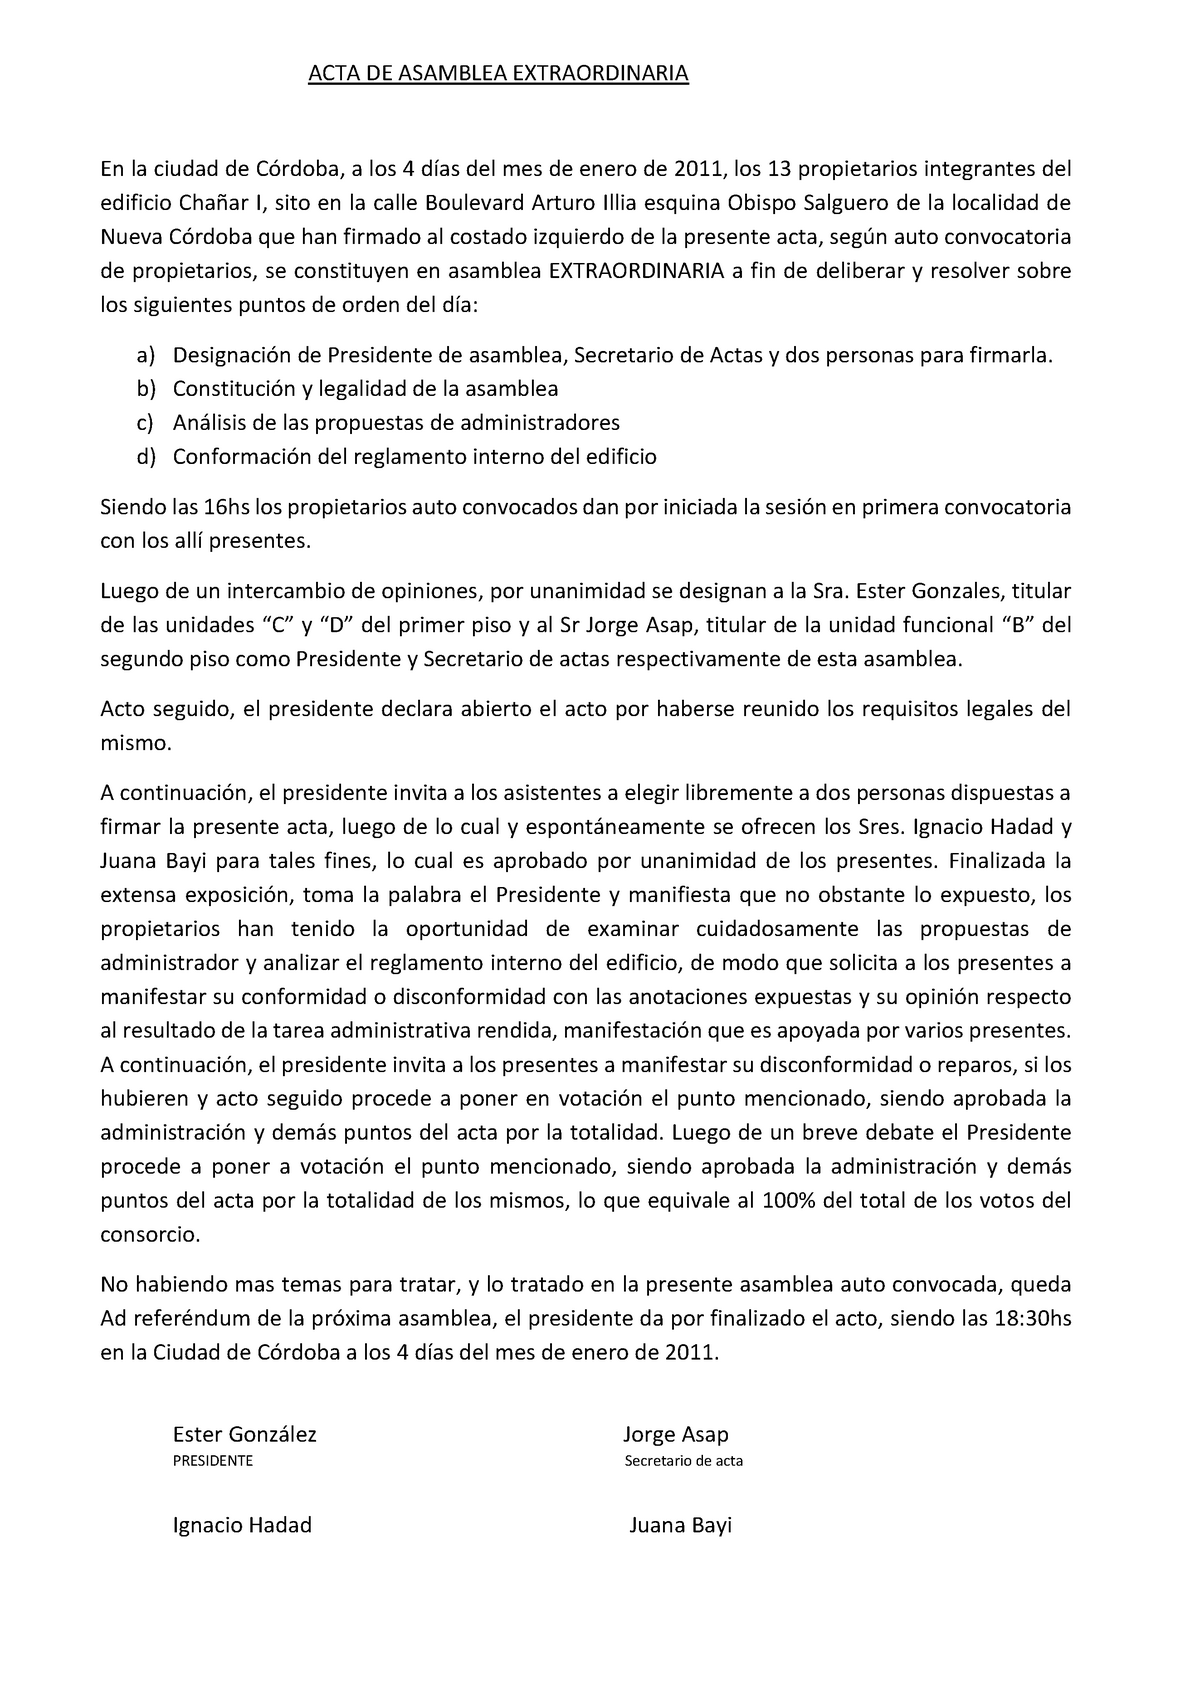 ACTA DE Asamblea Extraordinaria - ACTA DE ASAMBLEA EXTRAORDINARIA En la  ciudad de Córdoba, a los 4 - Studocu